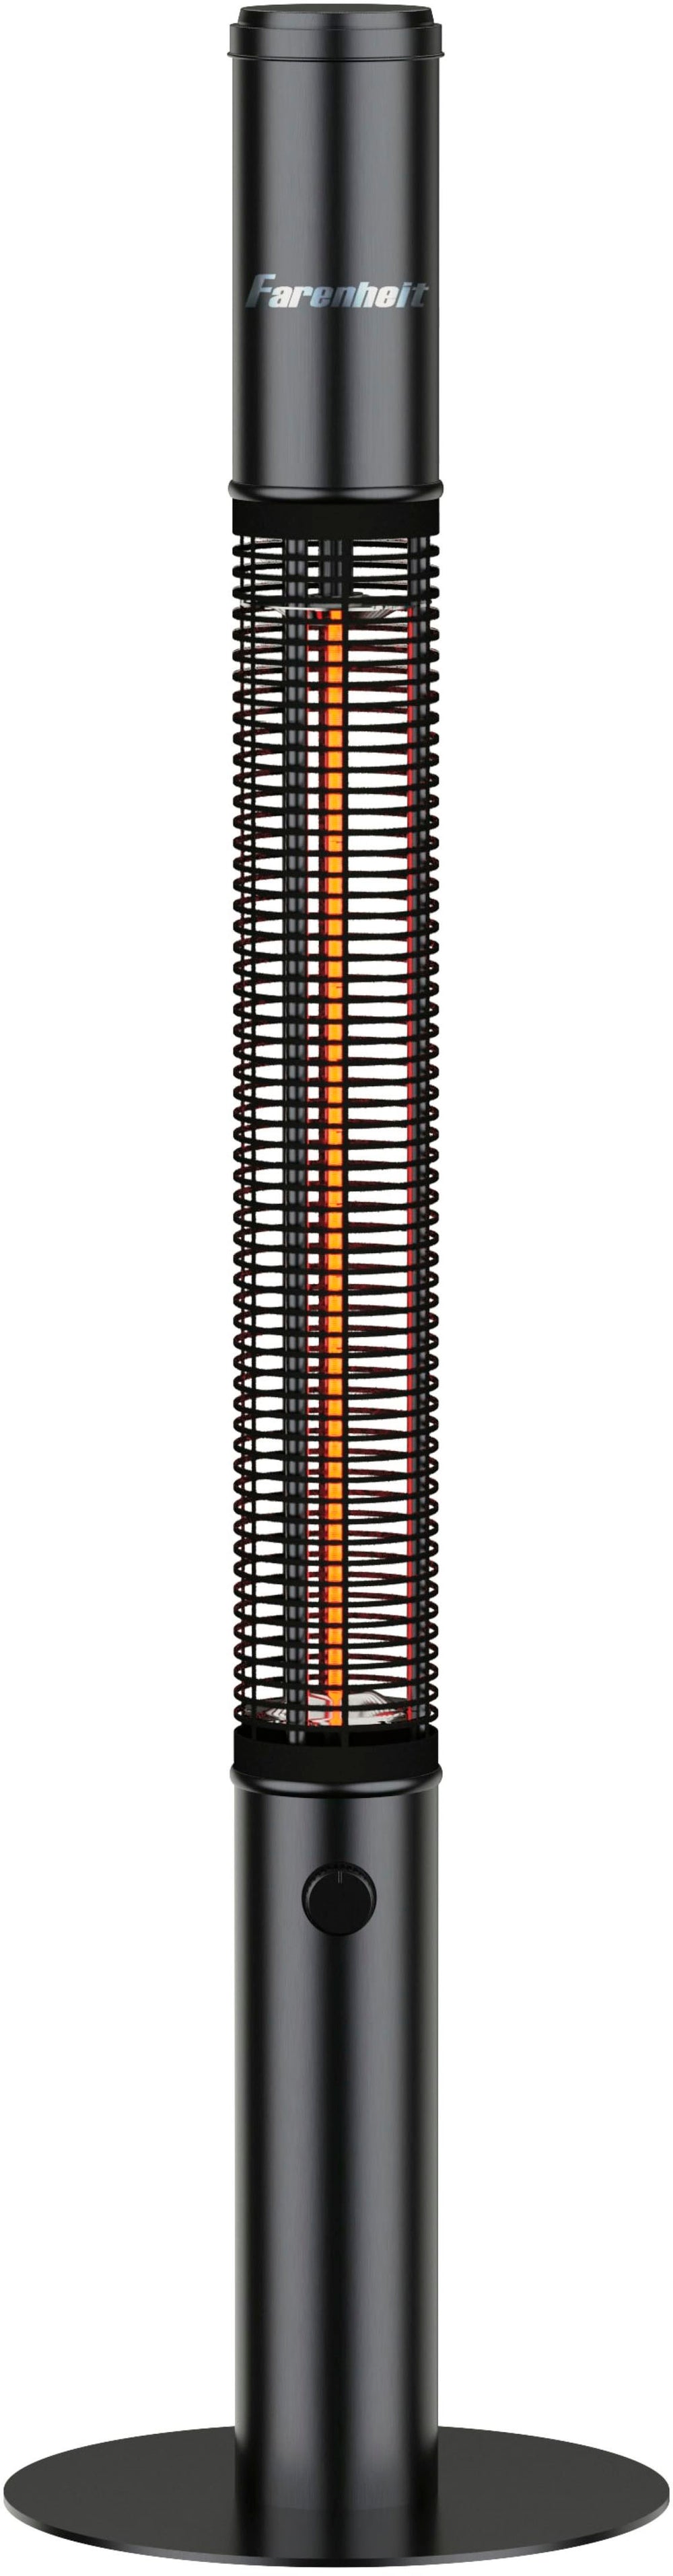 Farenheit - 59" Infrared Tower Heater - Black_1